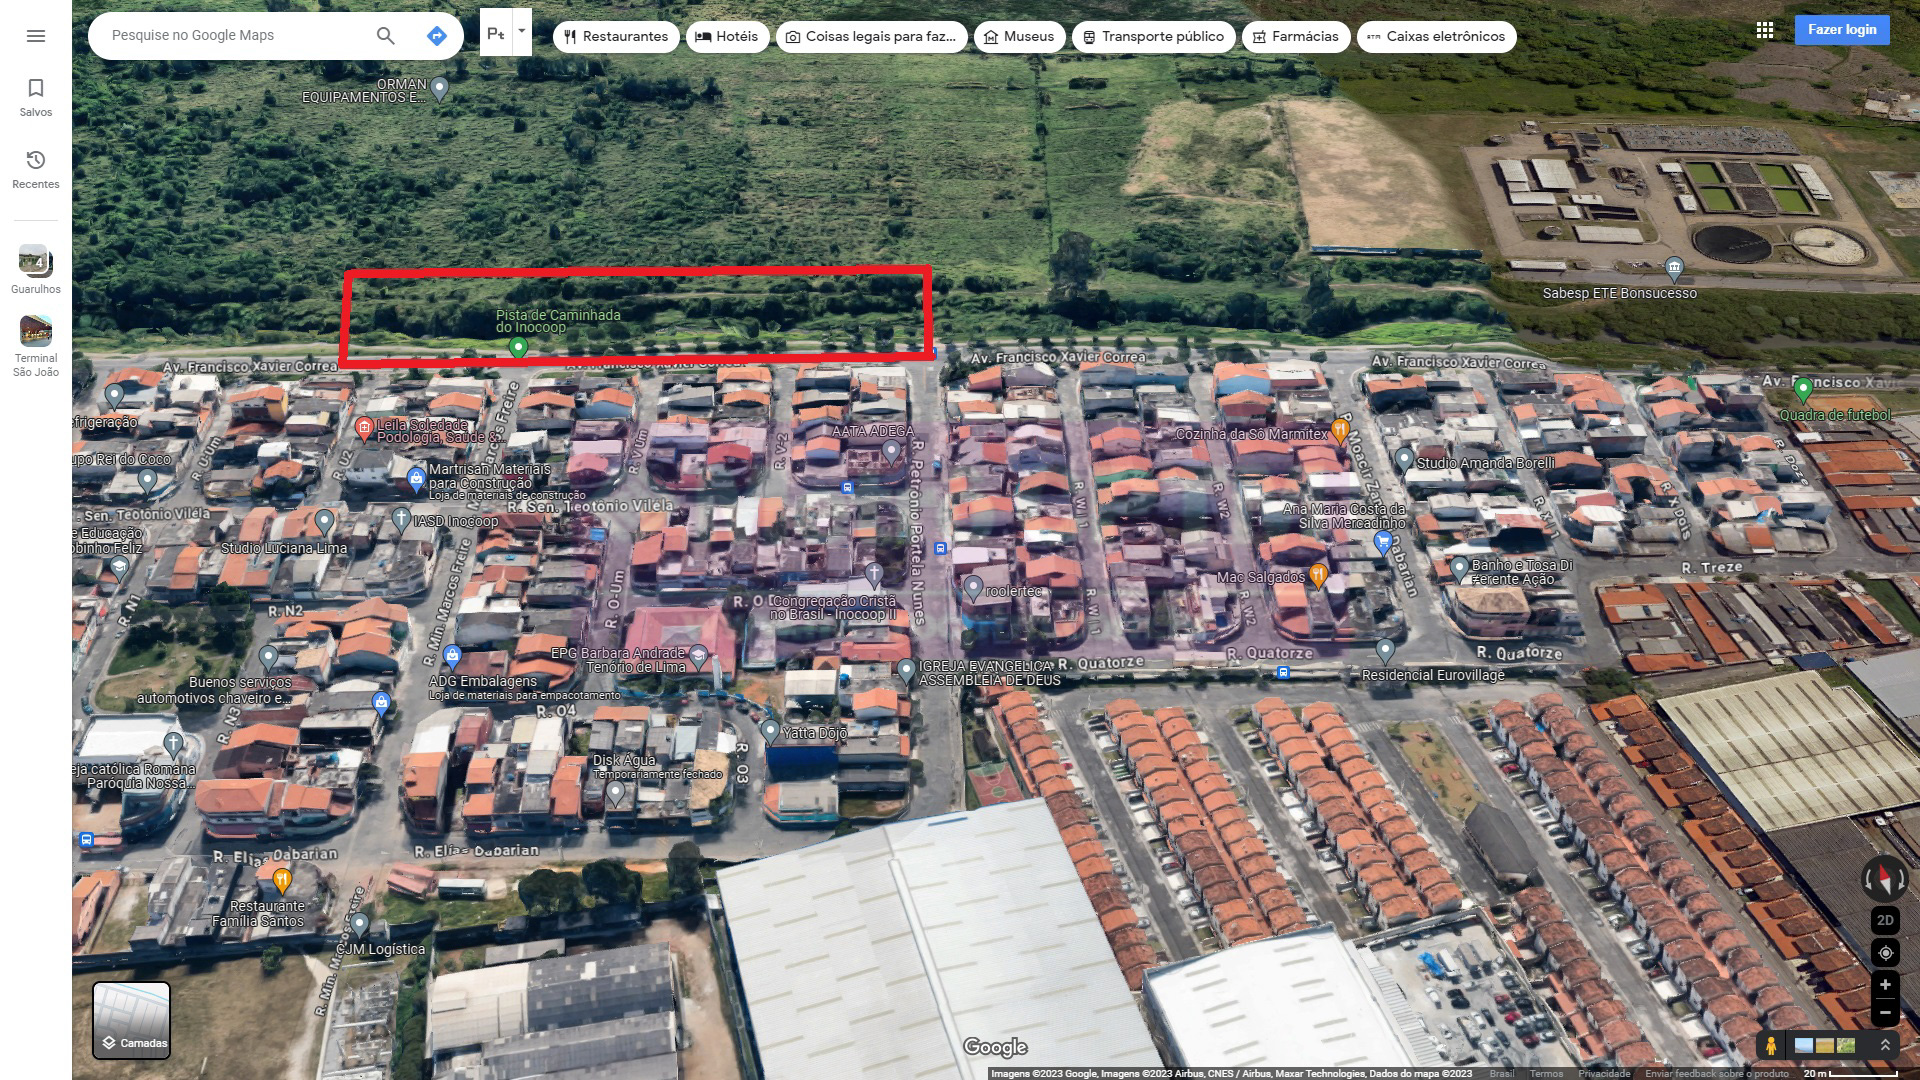 Possivel localização da estação Bonsucesso (Google Maps)